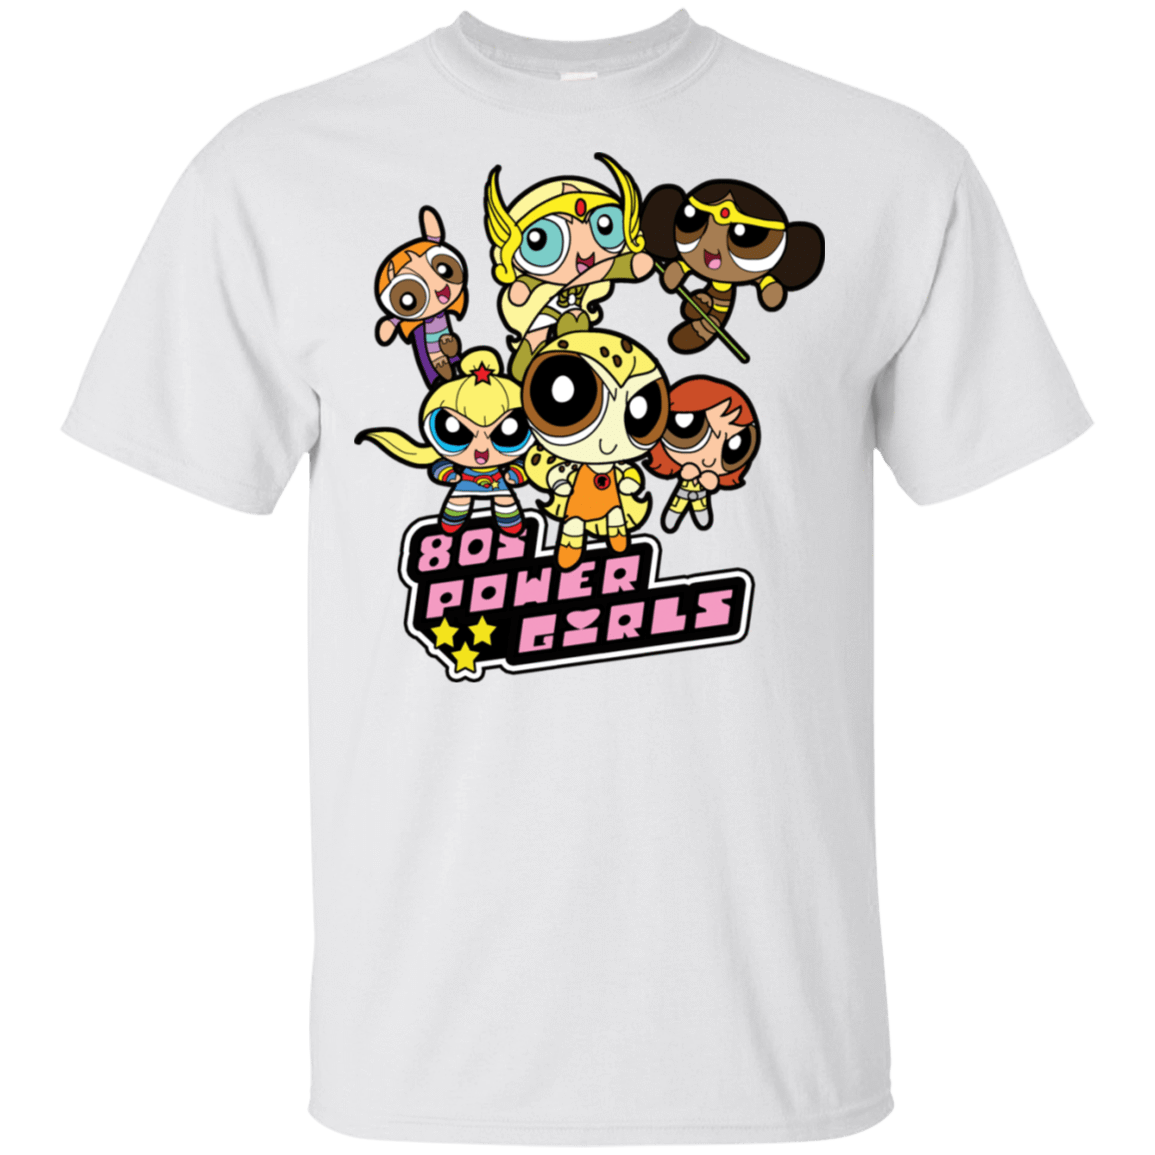 T-Shirts White / S 80s Power Girls T-Shirt